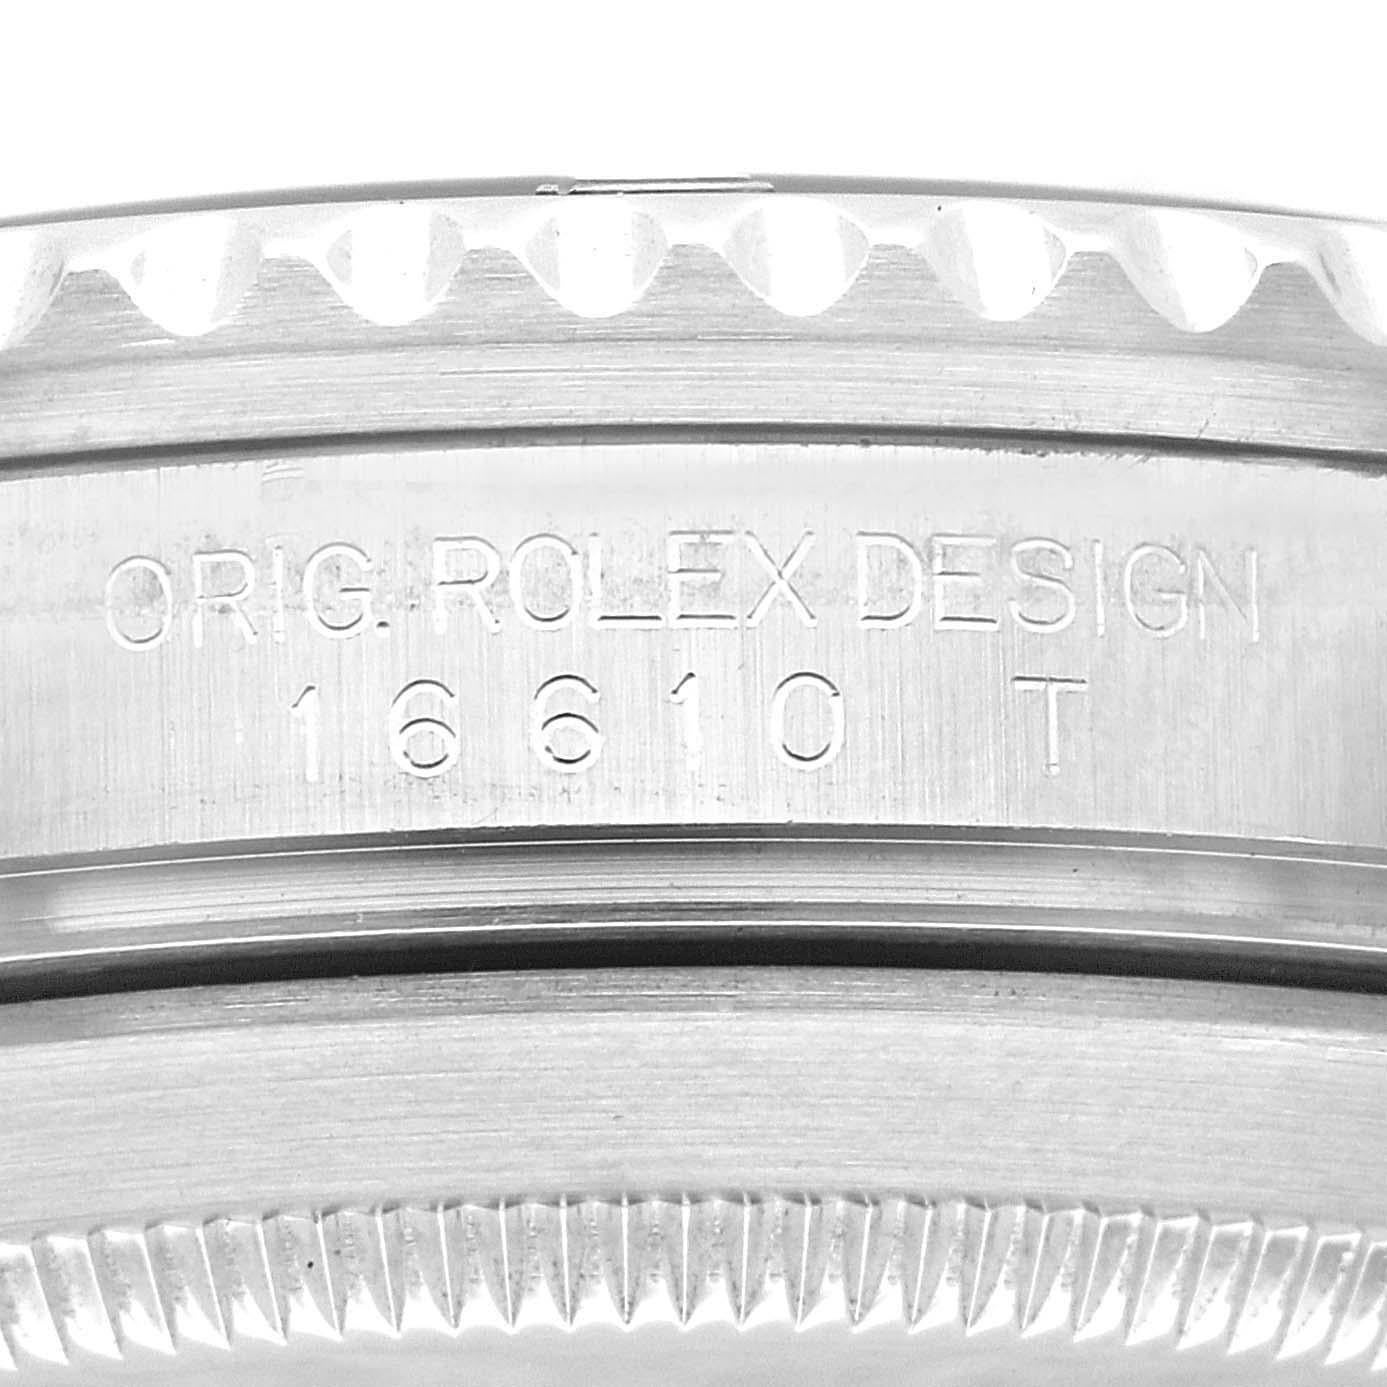 Rolex Submariner Date Black Dial Steel Mens Watch 16610. Mouvement automatique à remontage automatique, officiellement certifié chronomètre. Boîtier en acier inoxydable de 40.0 mm de diamètre. Logo Rolex sur la couronne. Lunette tournante